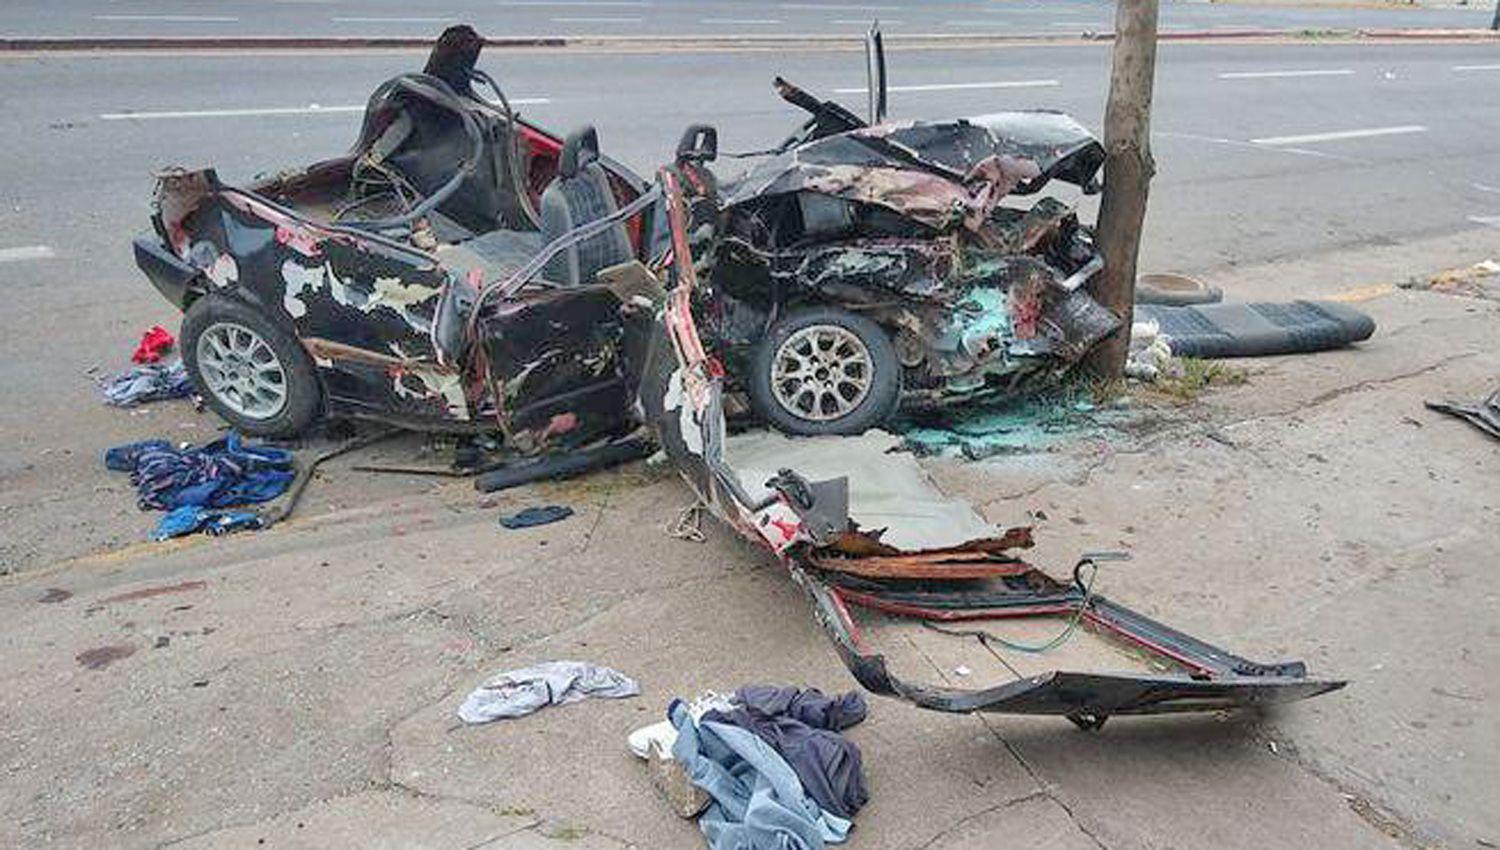 Tragedia- tres joacutevenes fallecieron en el acto en un accidente de autos